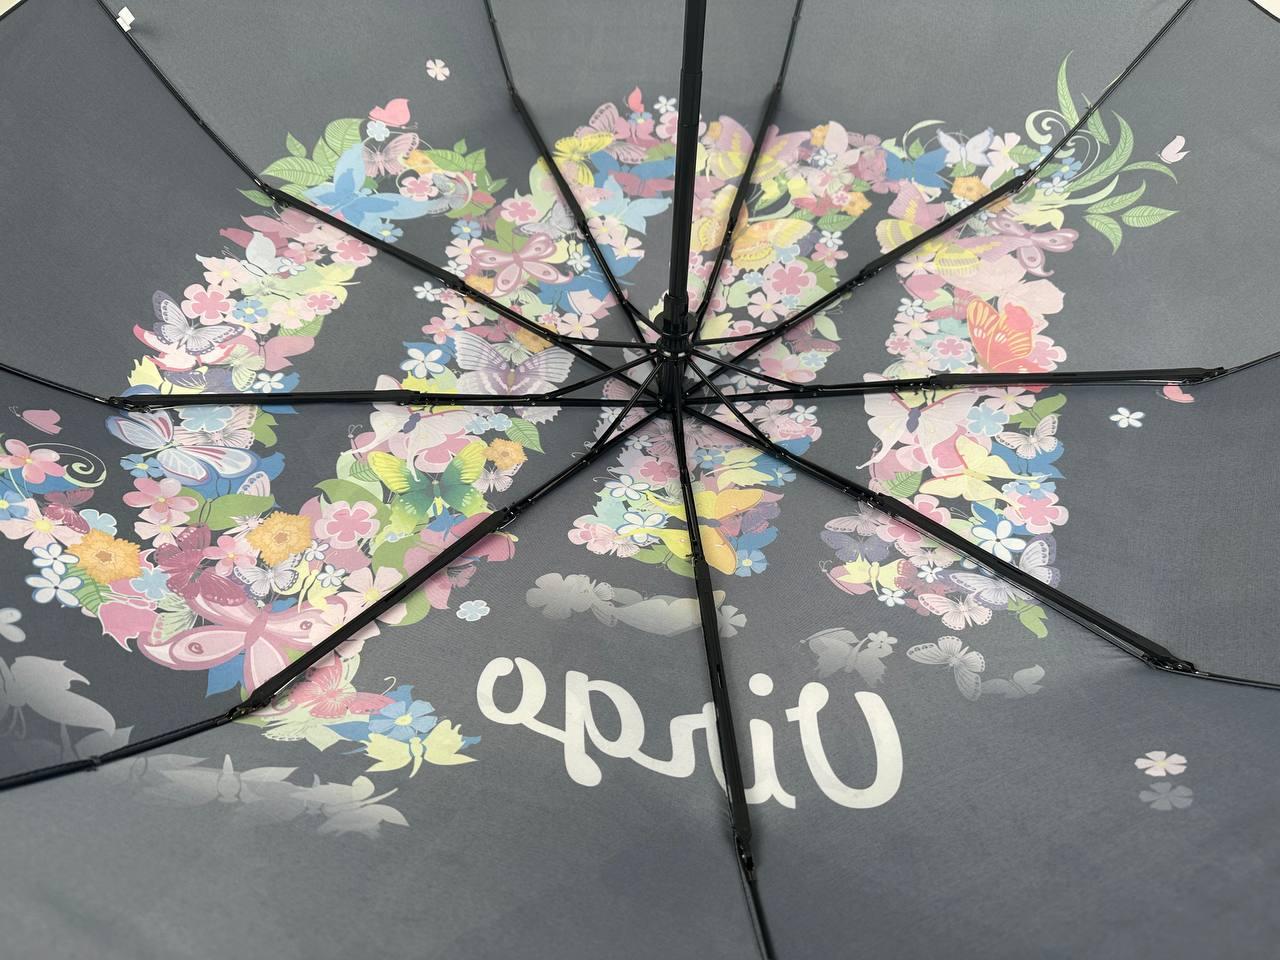 Женский складной зонтик полный автомат Rain 98 см черный - фото 9